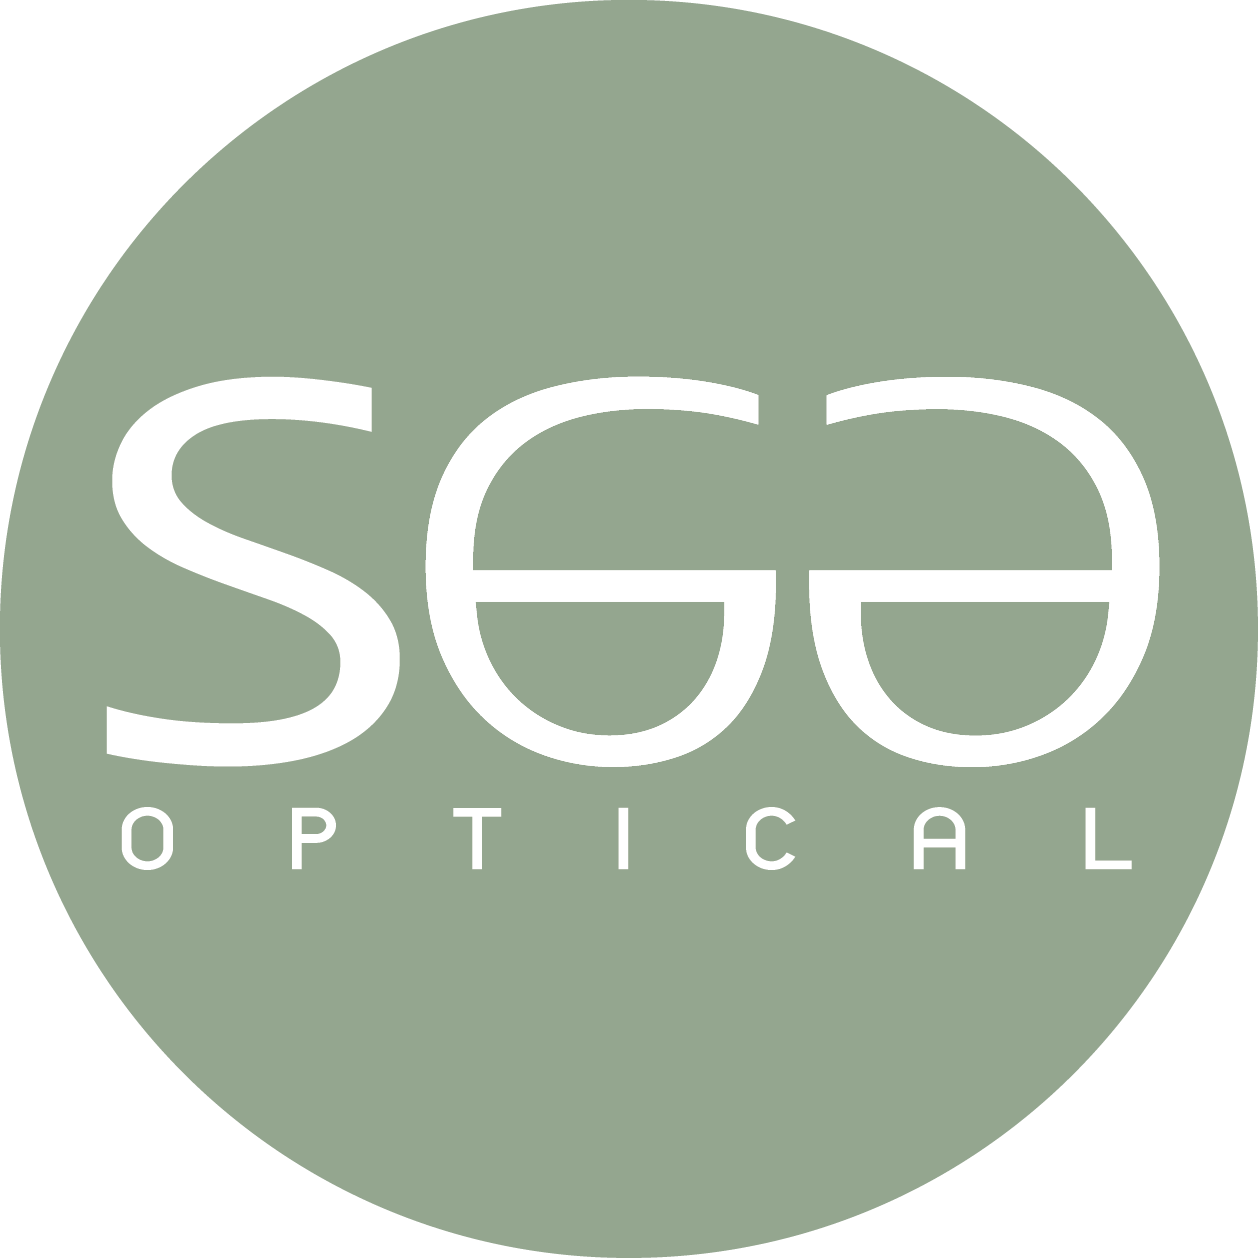 Eye glasses optic logo design template vector image on VectorStock | Optic  logo, Glasses logo, Sunglasses logo design